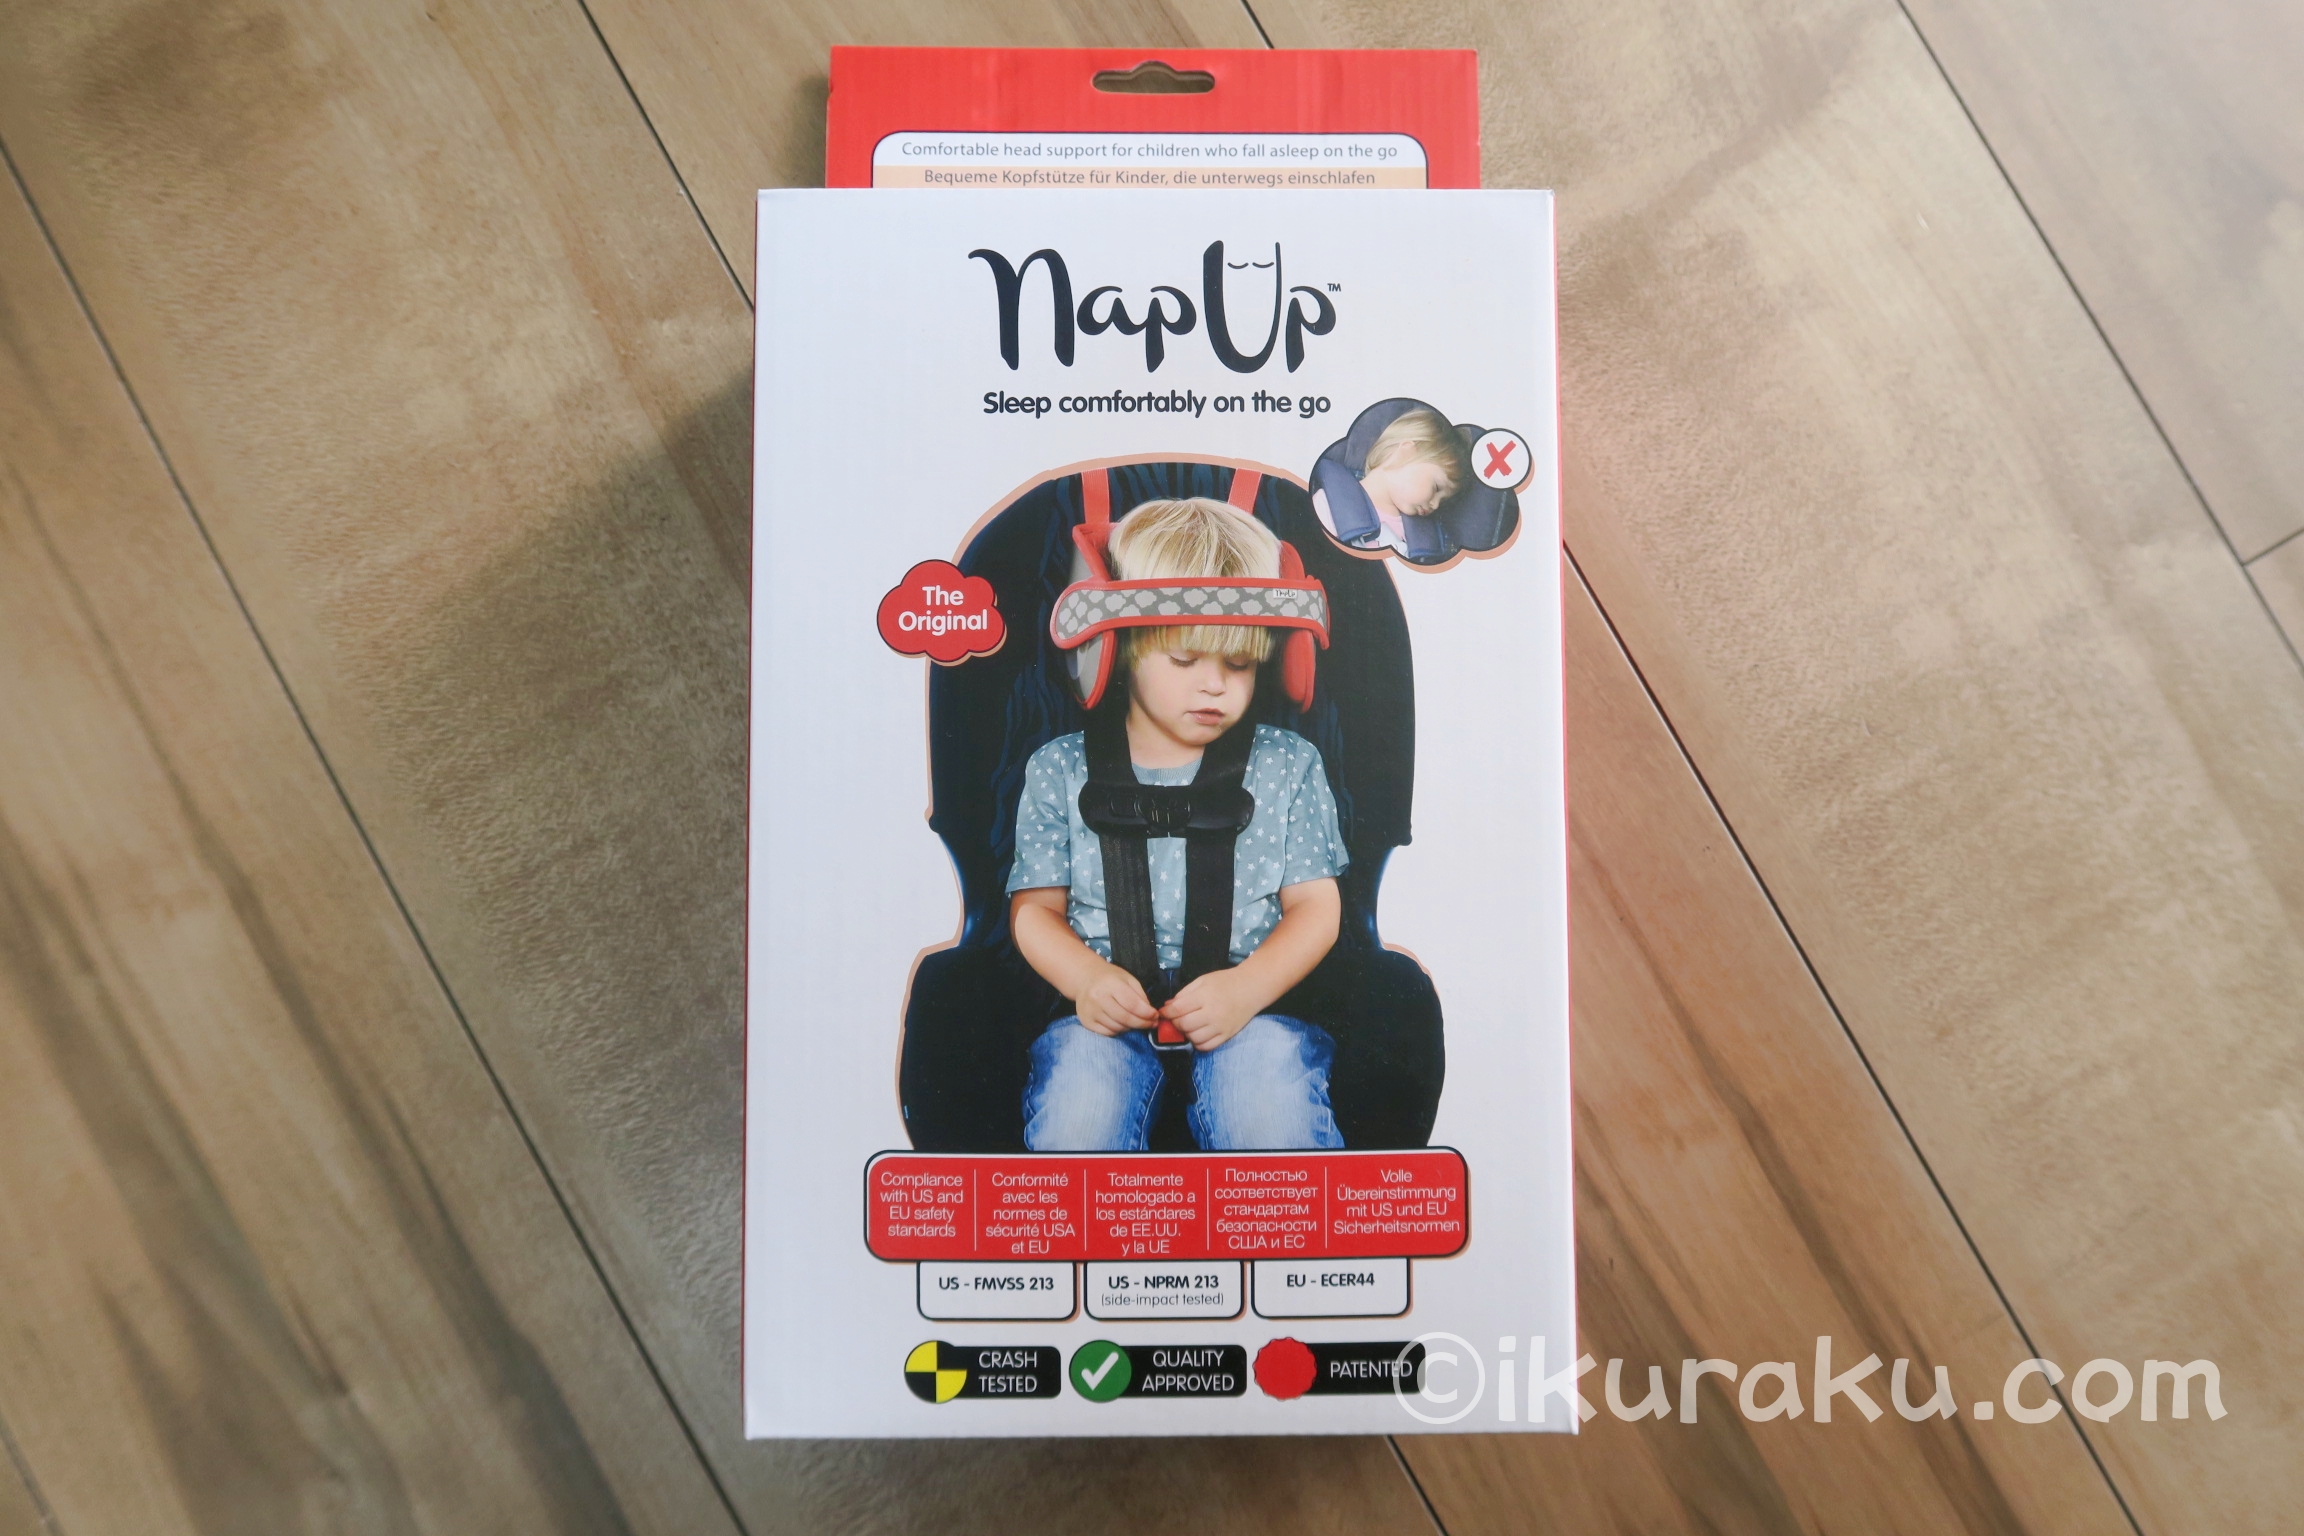 「NapUpナップアップ うたたねサポート 日本育児」の商品パッケージ